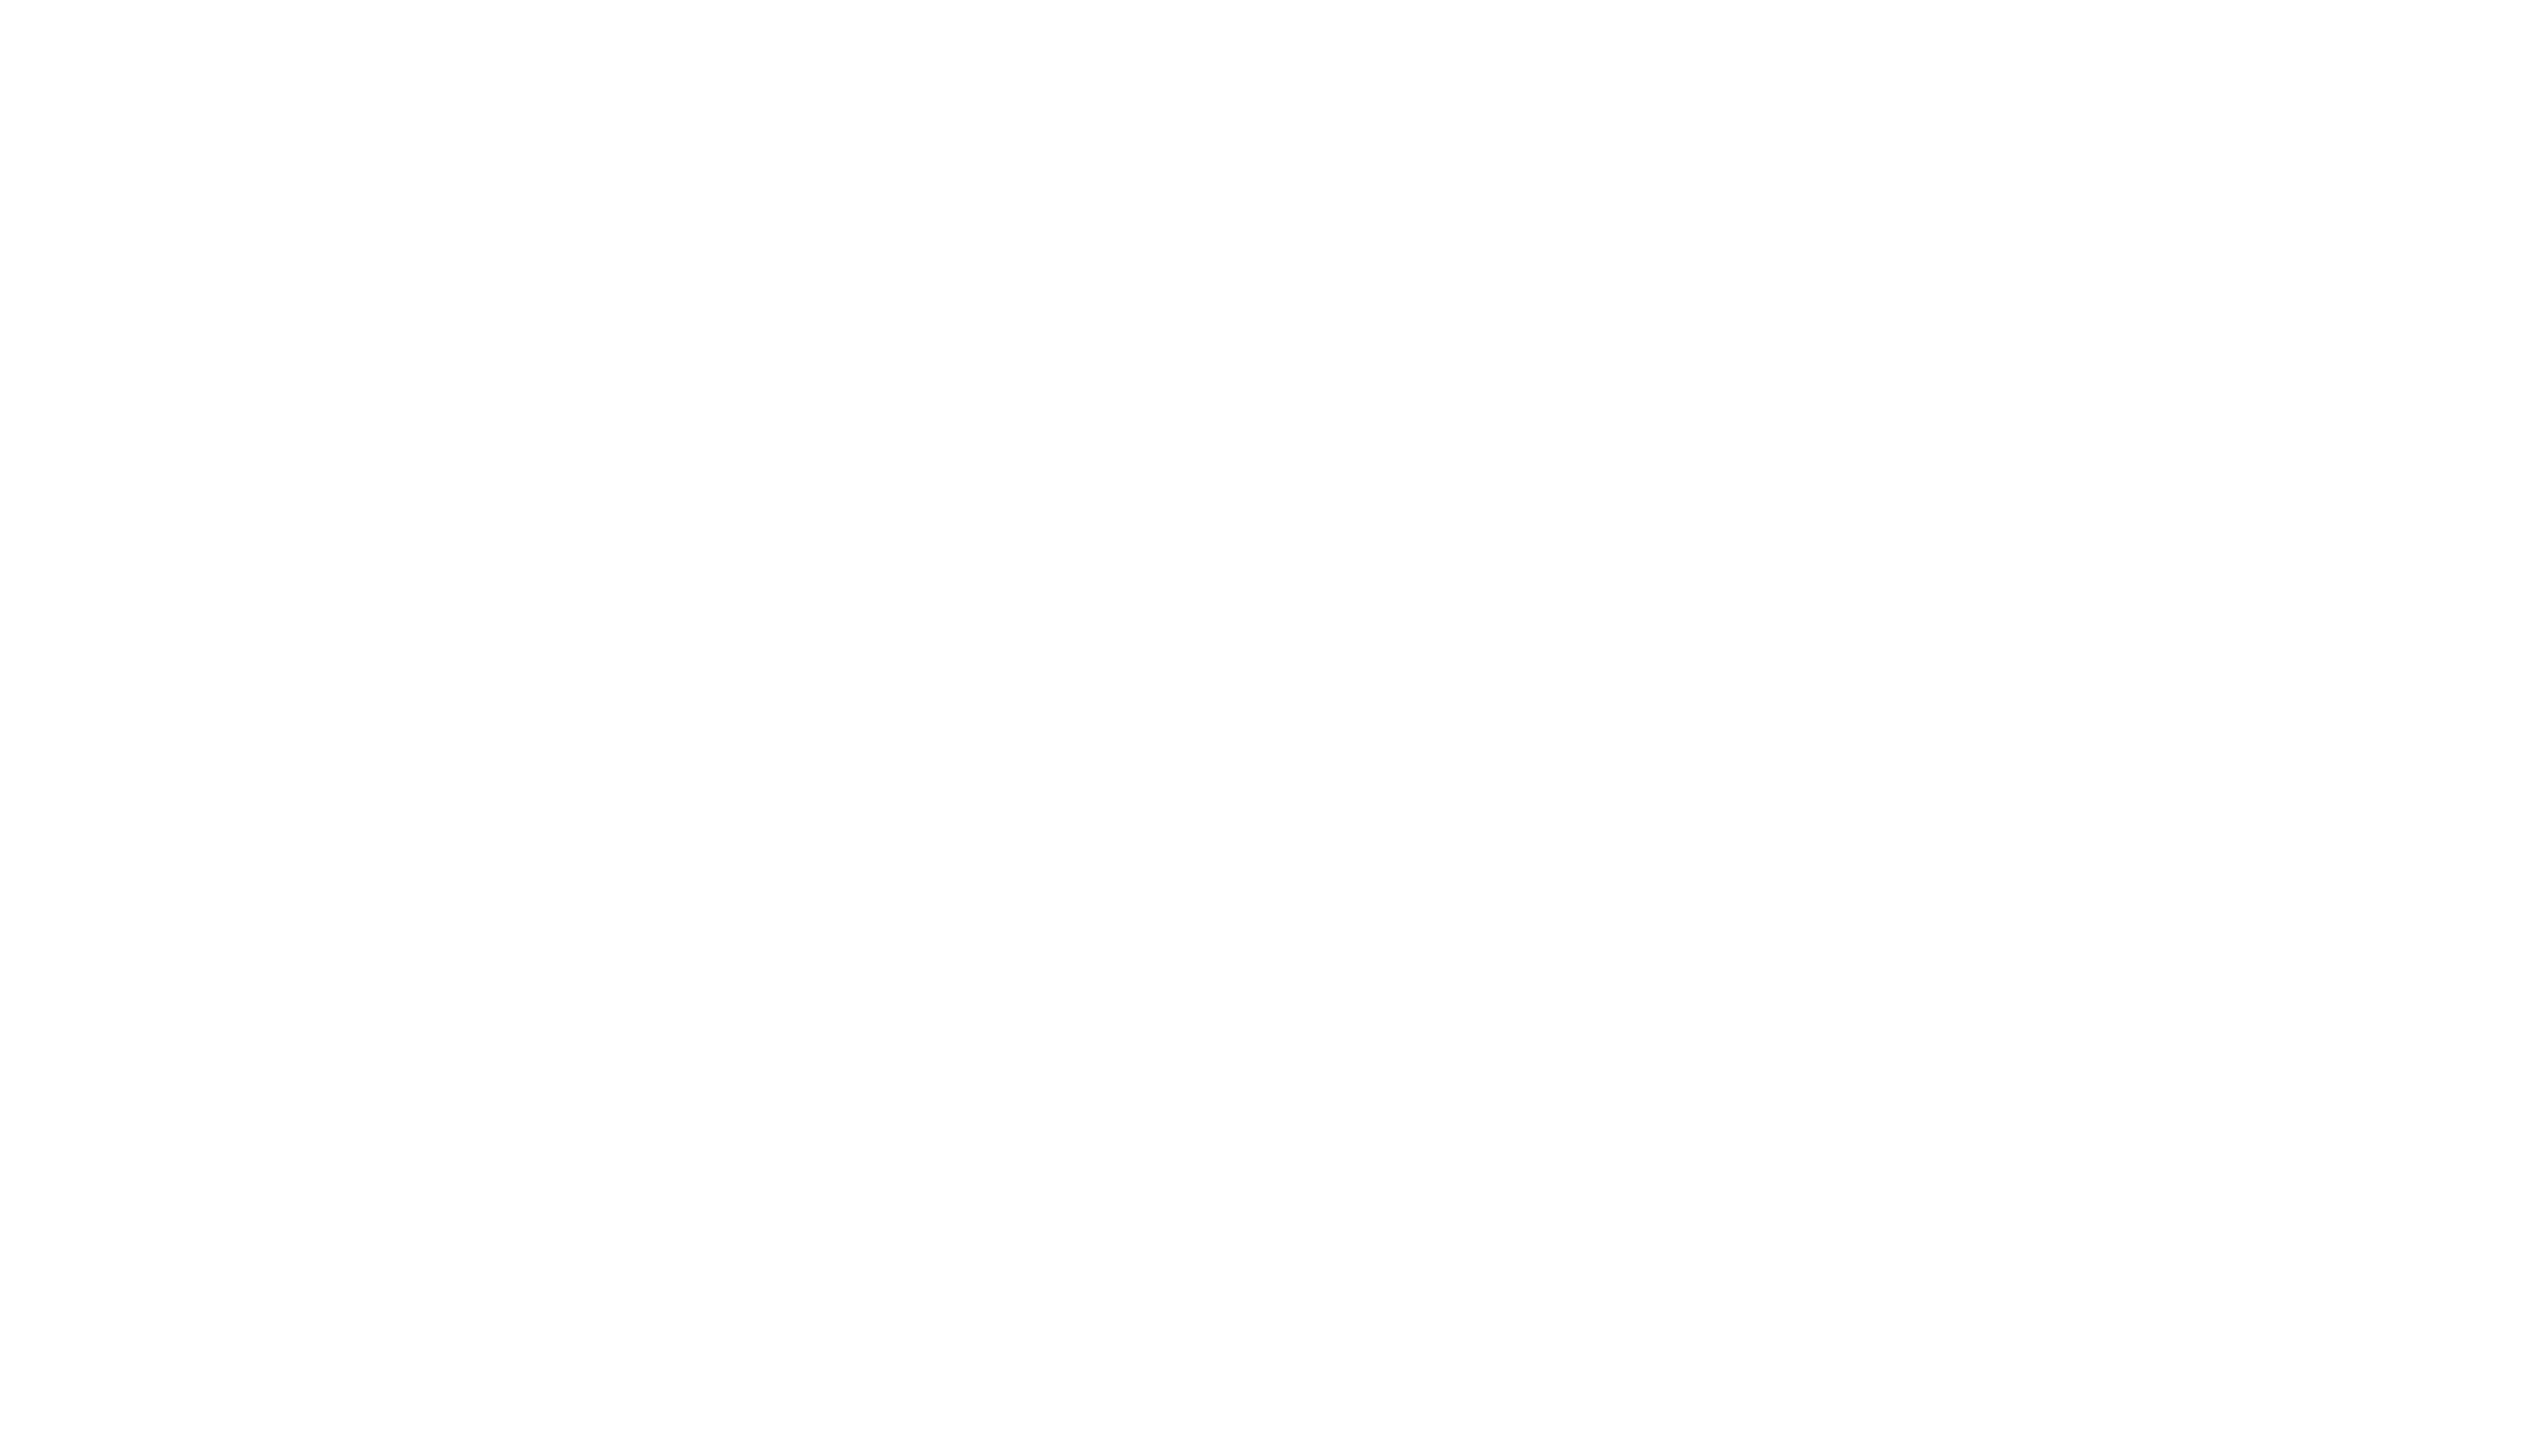 Hotel Villas Sayulita